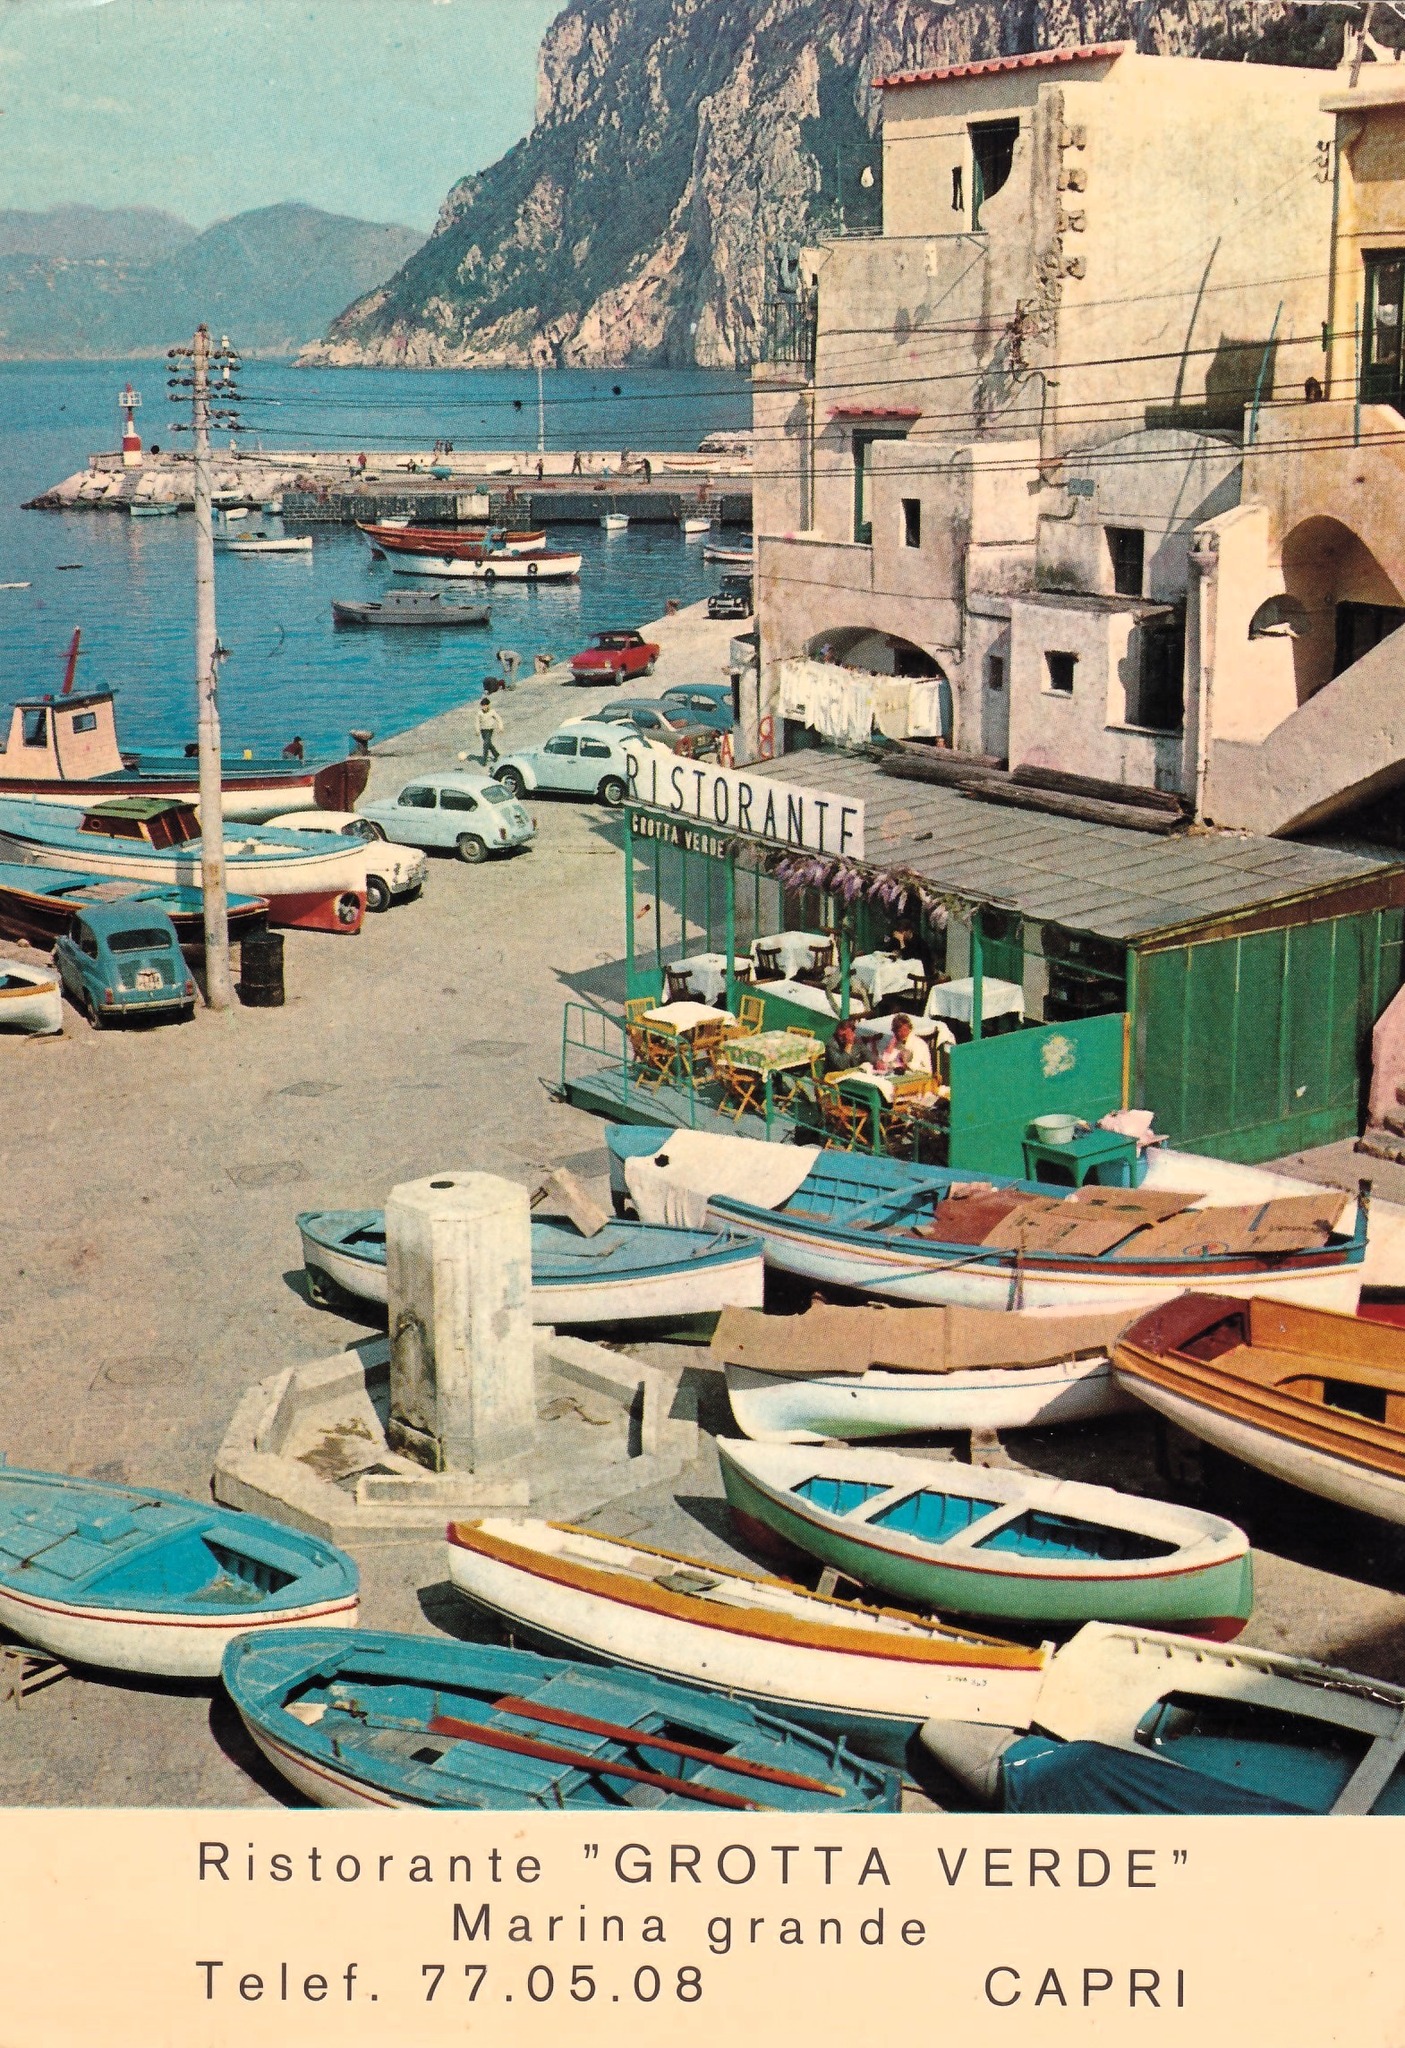 Quando i numeri telefonici di Capri iniziavano con 77: è “virale” la foto d’epoca